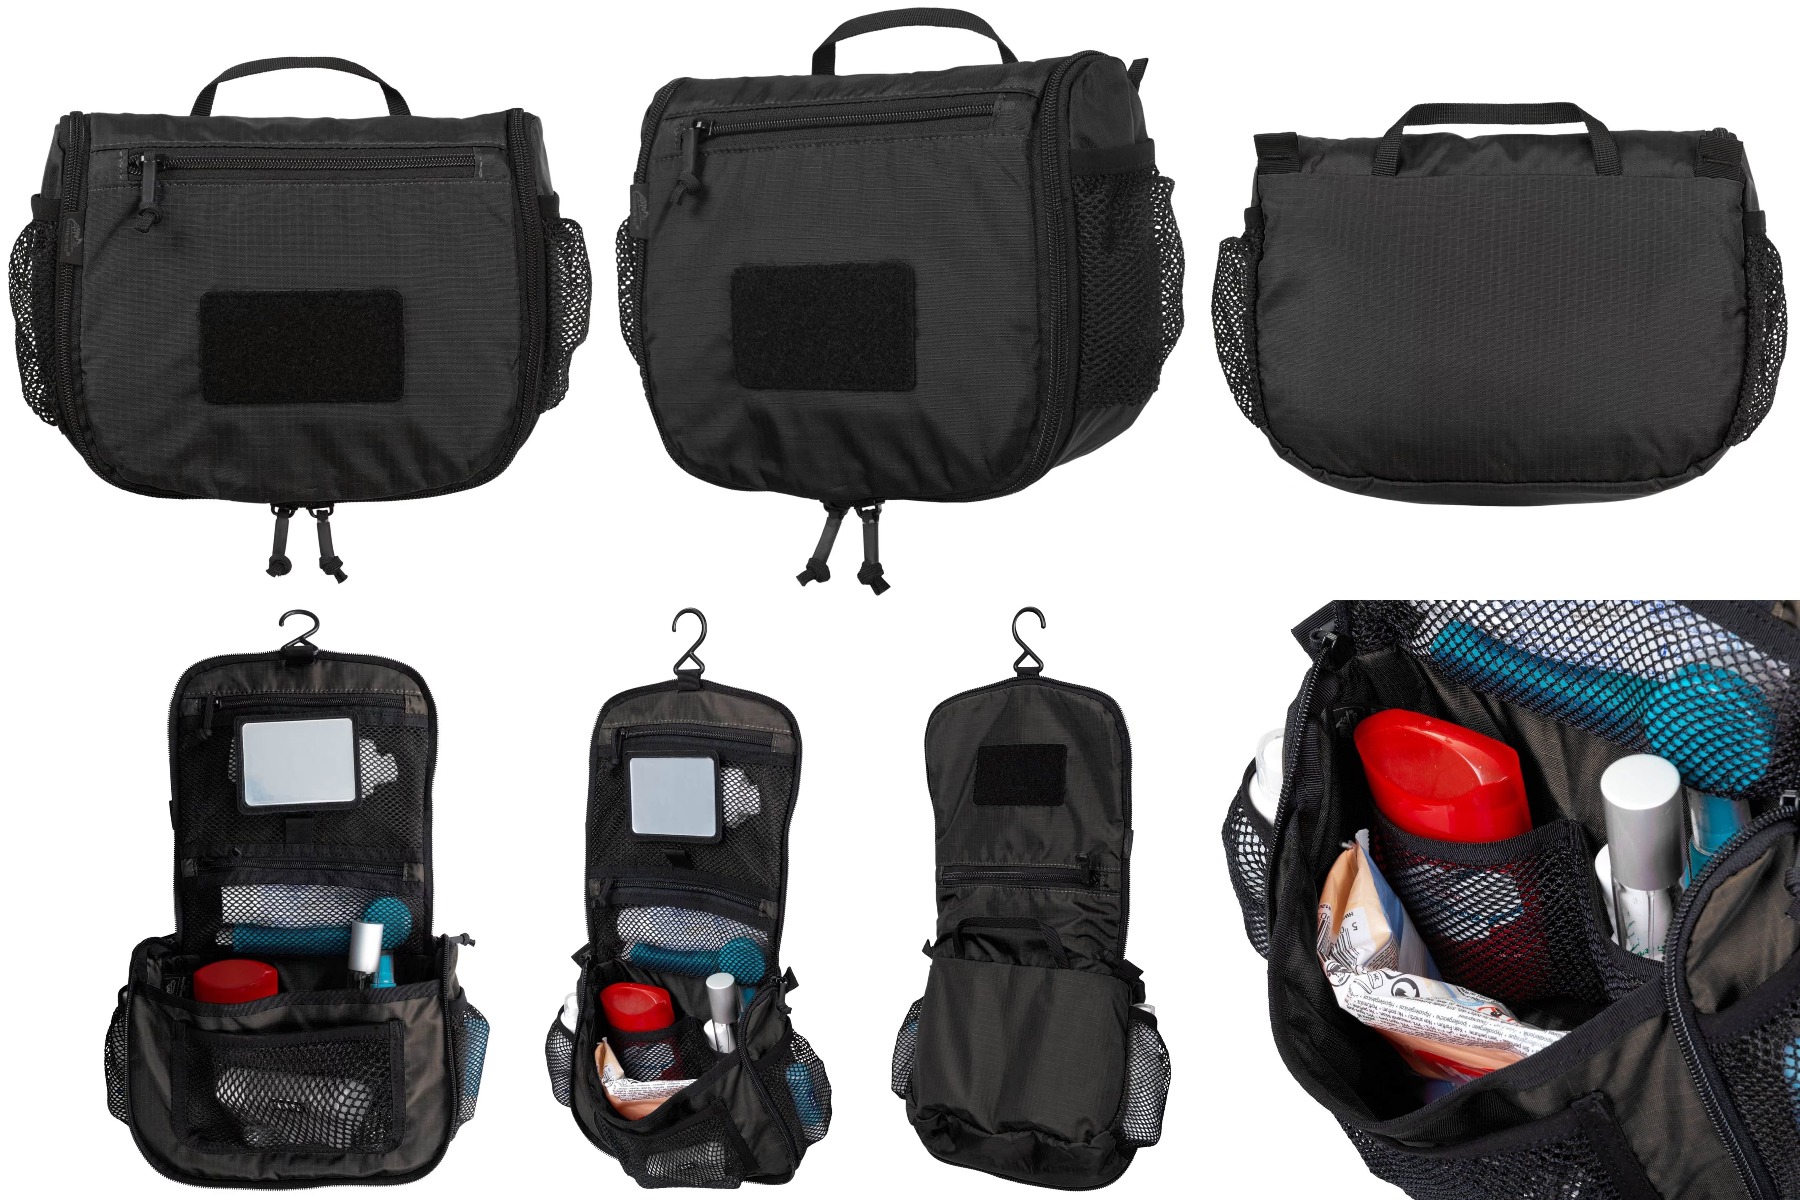 Izberite funkcionalnost in slog z Helikon potovalno toaletno torbico v črni barvni kombinaciji. Popolna za vojaške navdušence in potovanja.